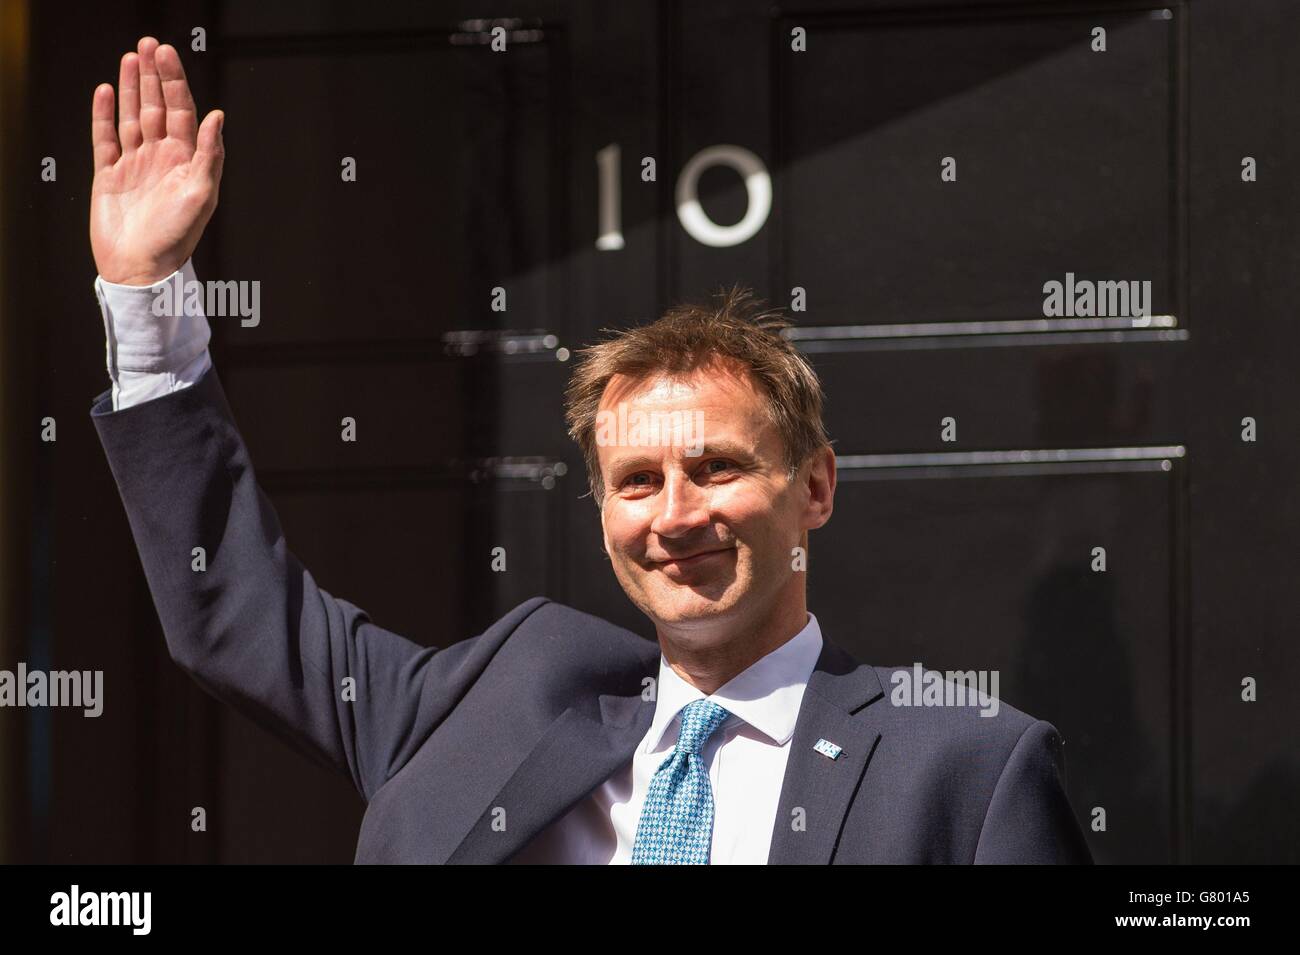 Jeremy Hunt, quien permanecerá como Secretario de Salud, llega a Downing Street, Westminster, Londres. Foto de stock